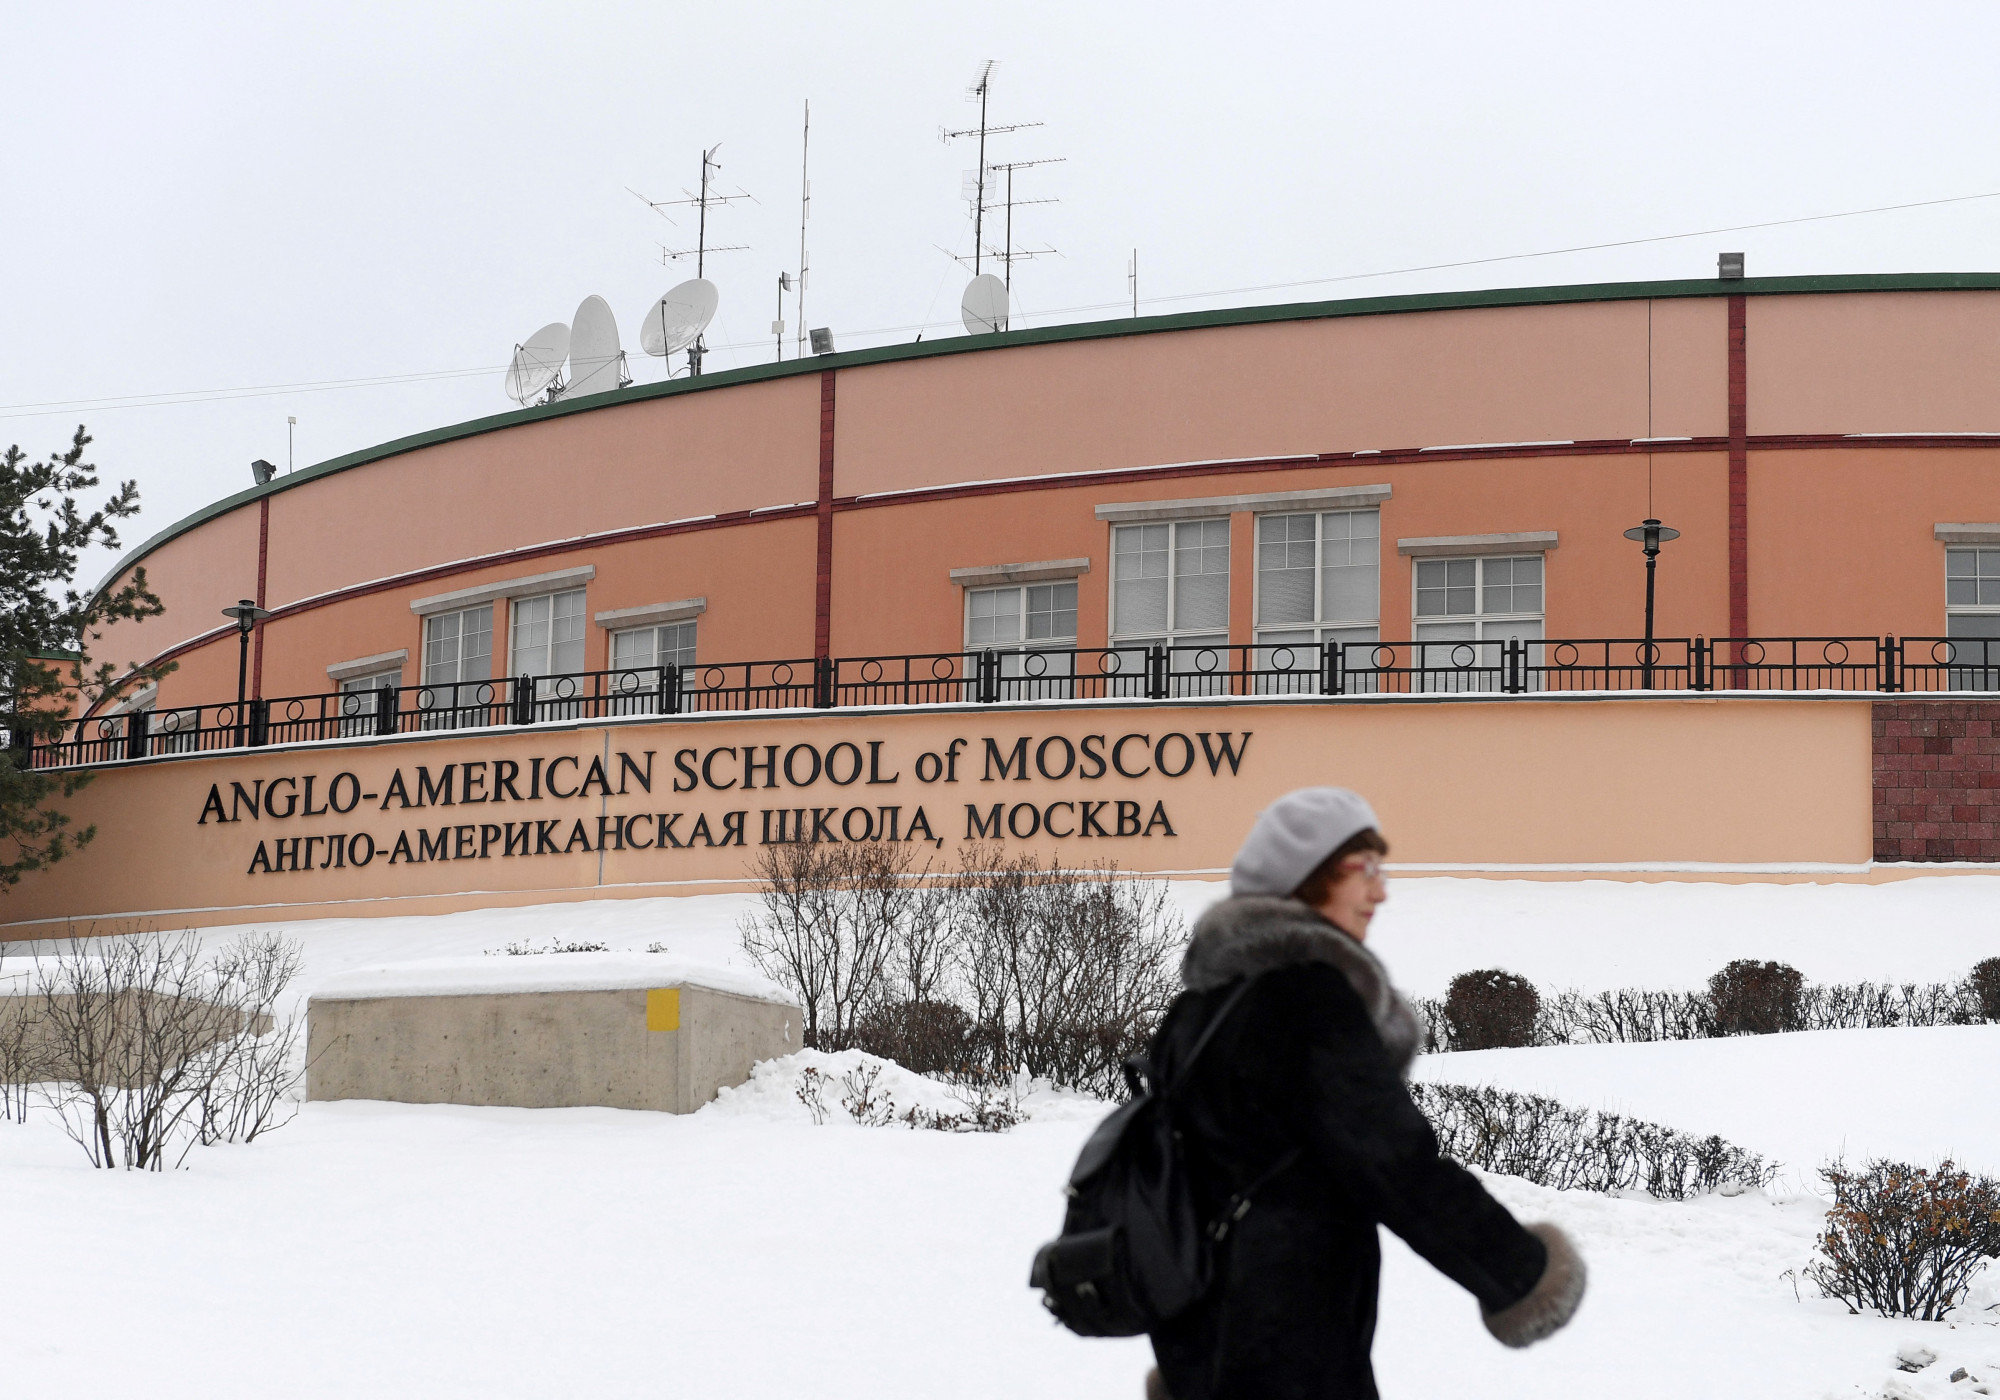 Felfüggesztették a moszkvai angol-amerikai iskola működését